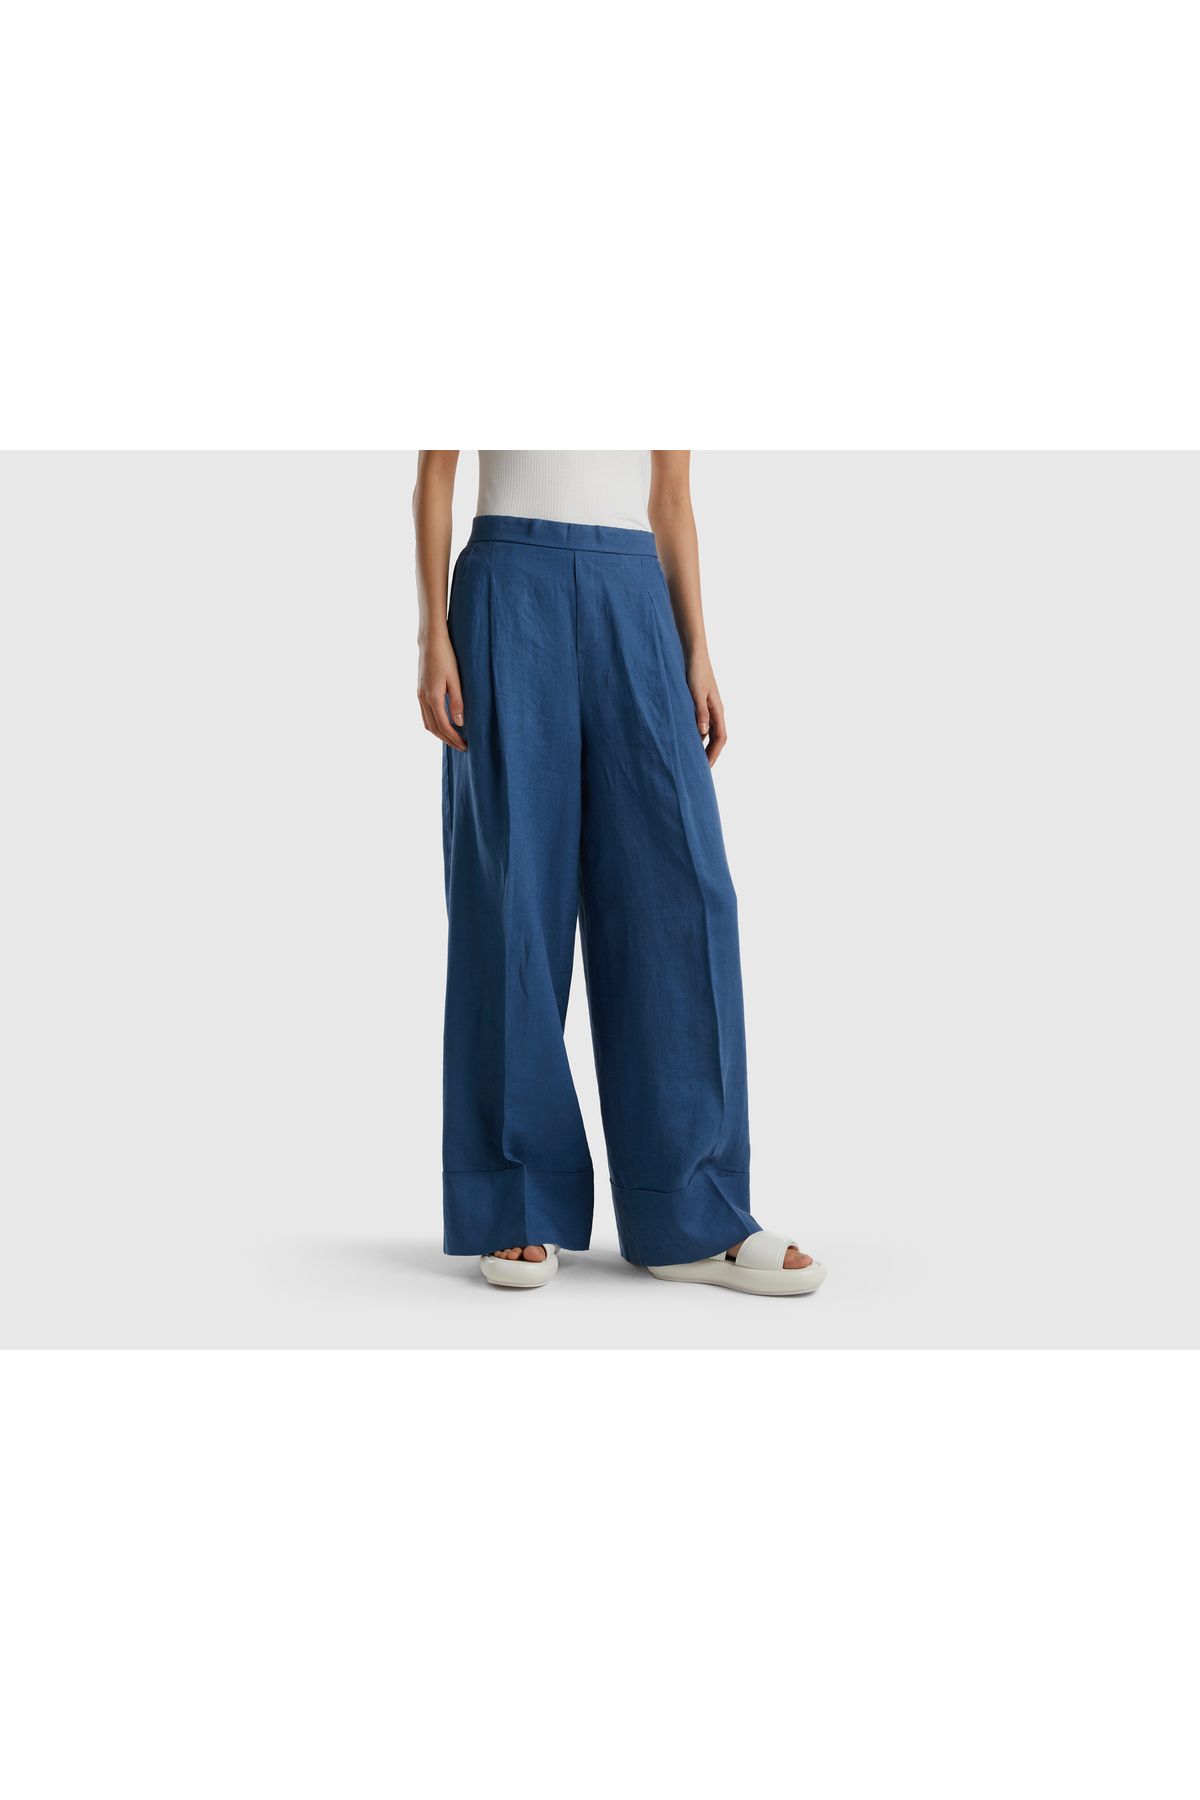 United Colors of Benetton Kadın Lacivert %100 Keten Beli Lastikli Geniş Kesim Pantolon